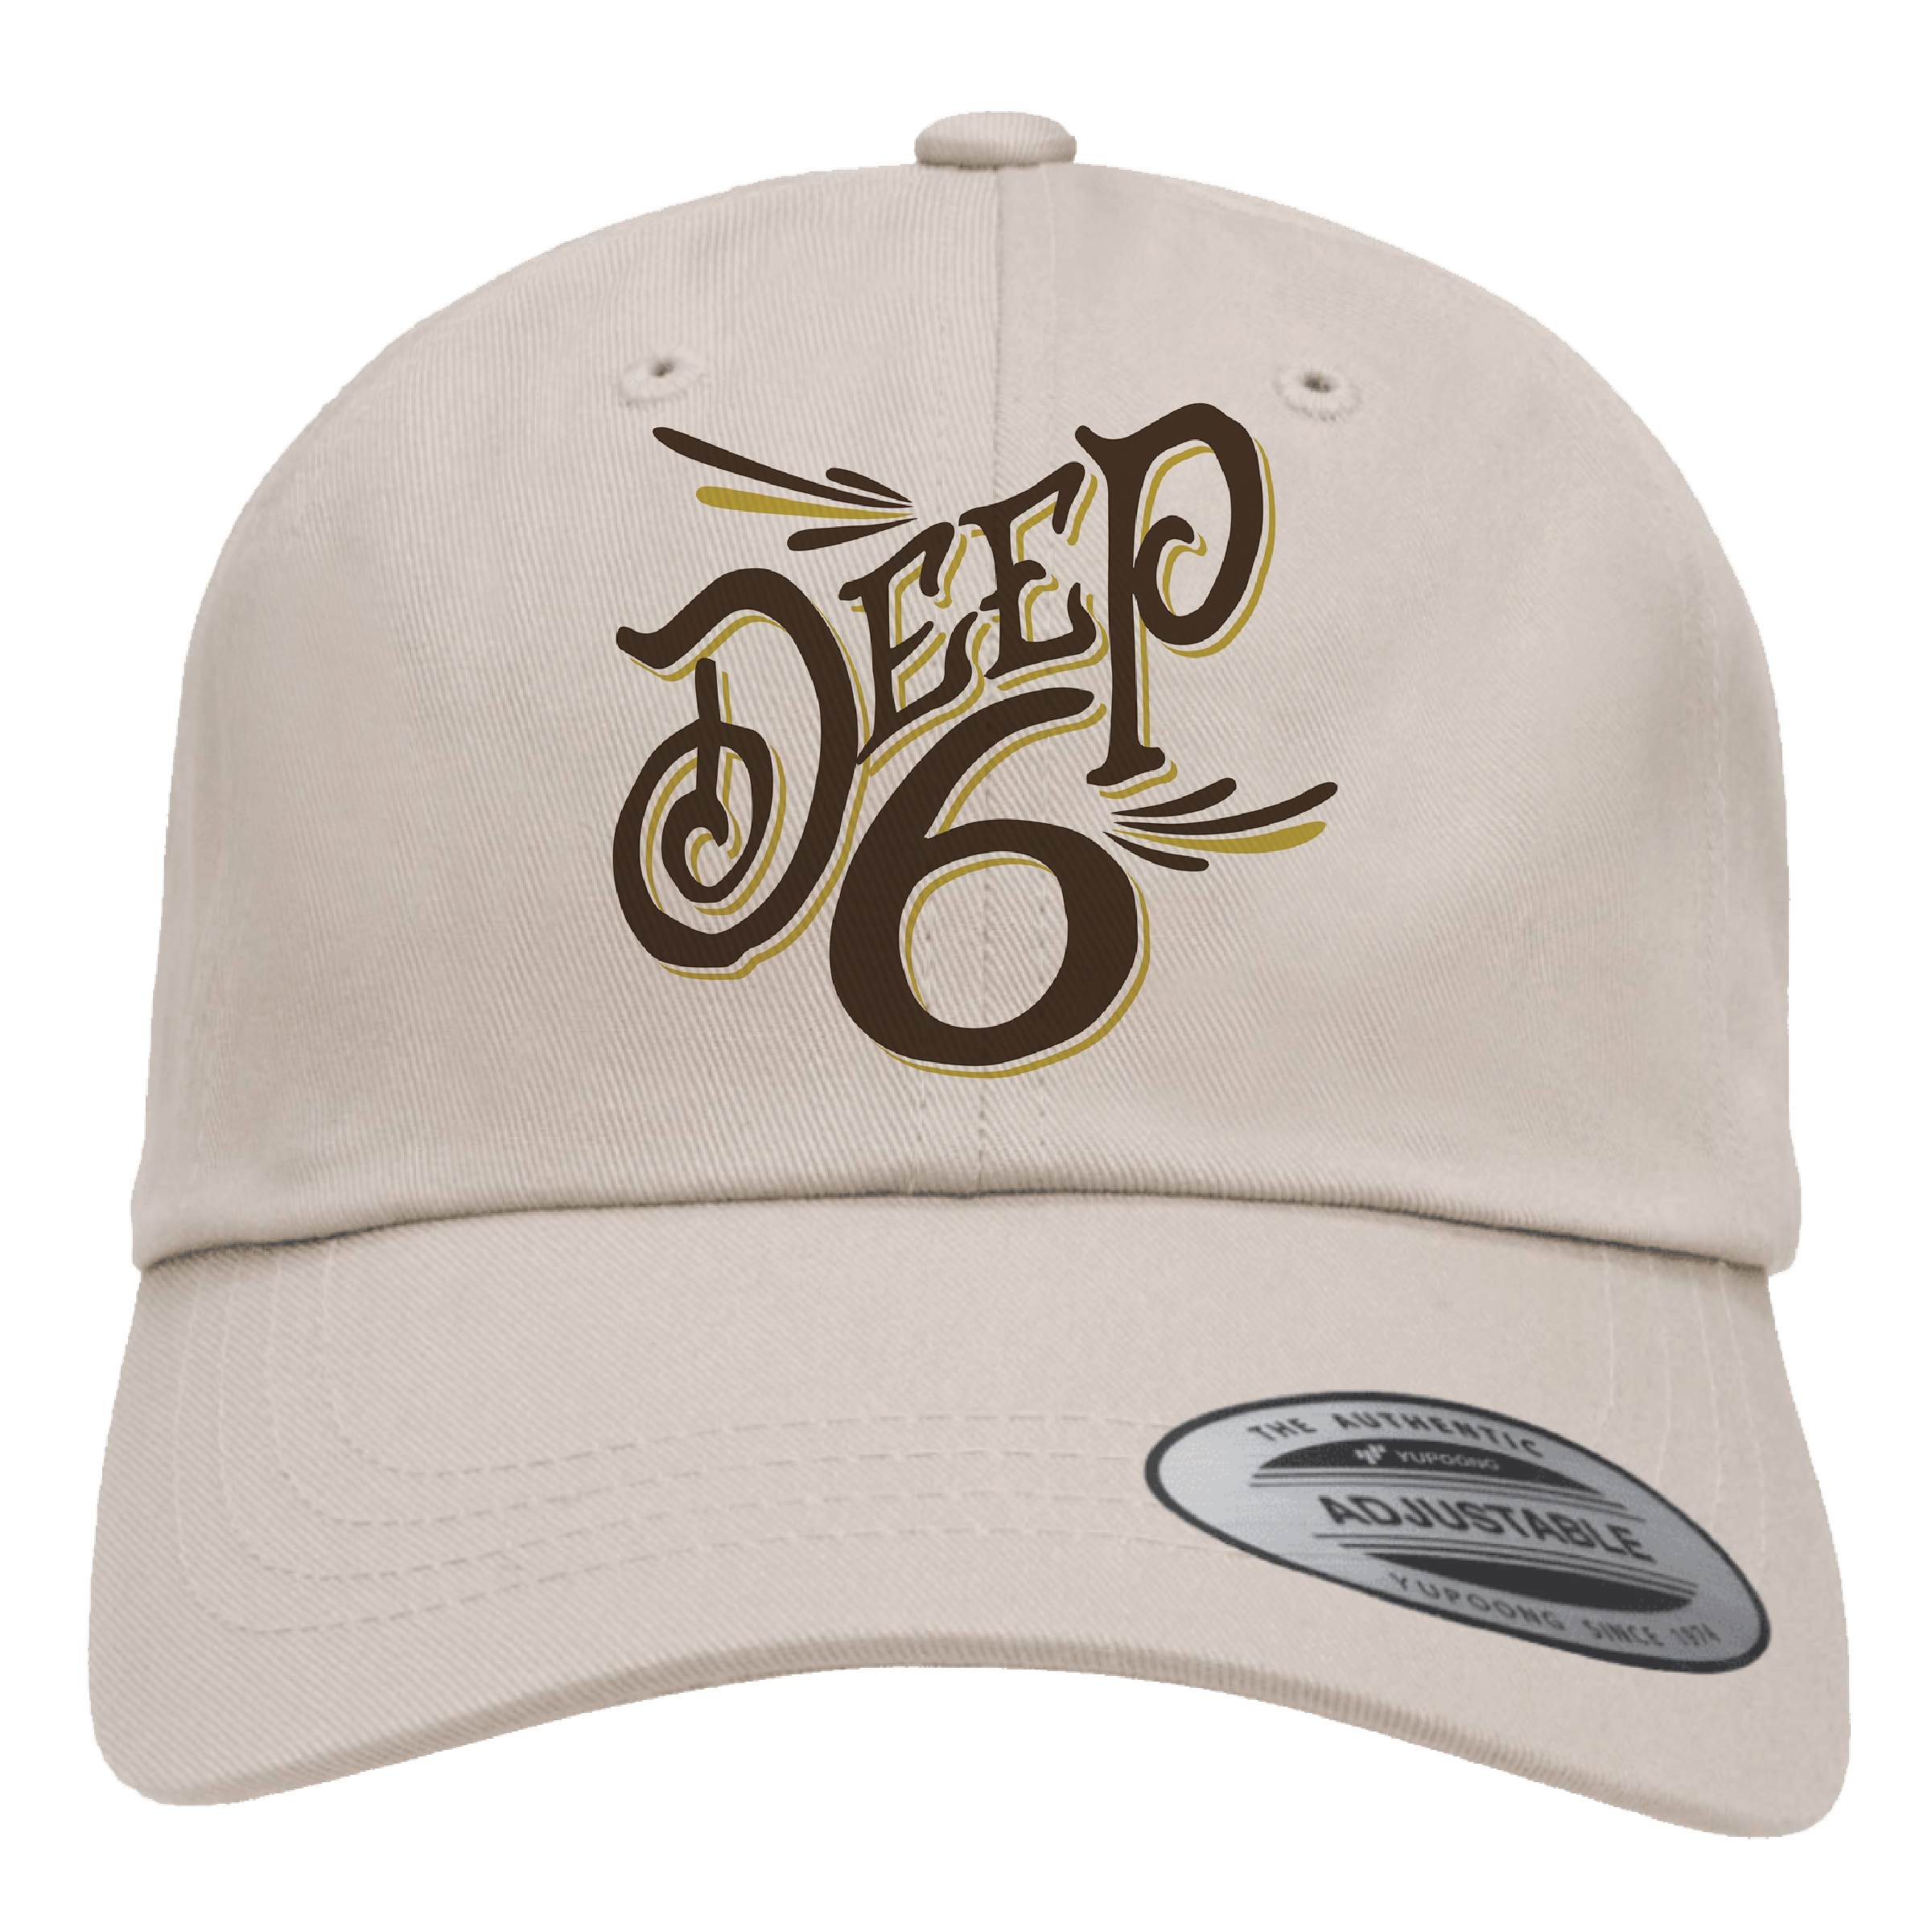 Deep 6 Dad Hat